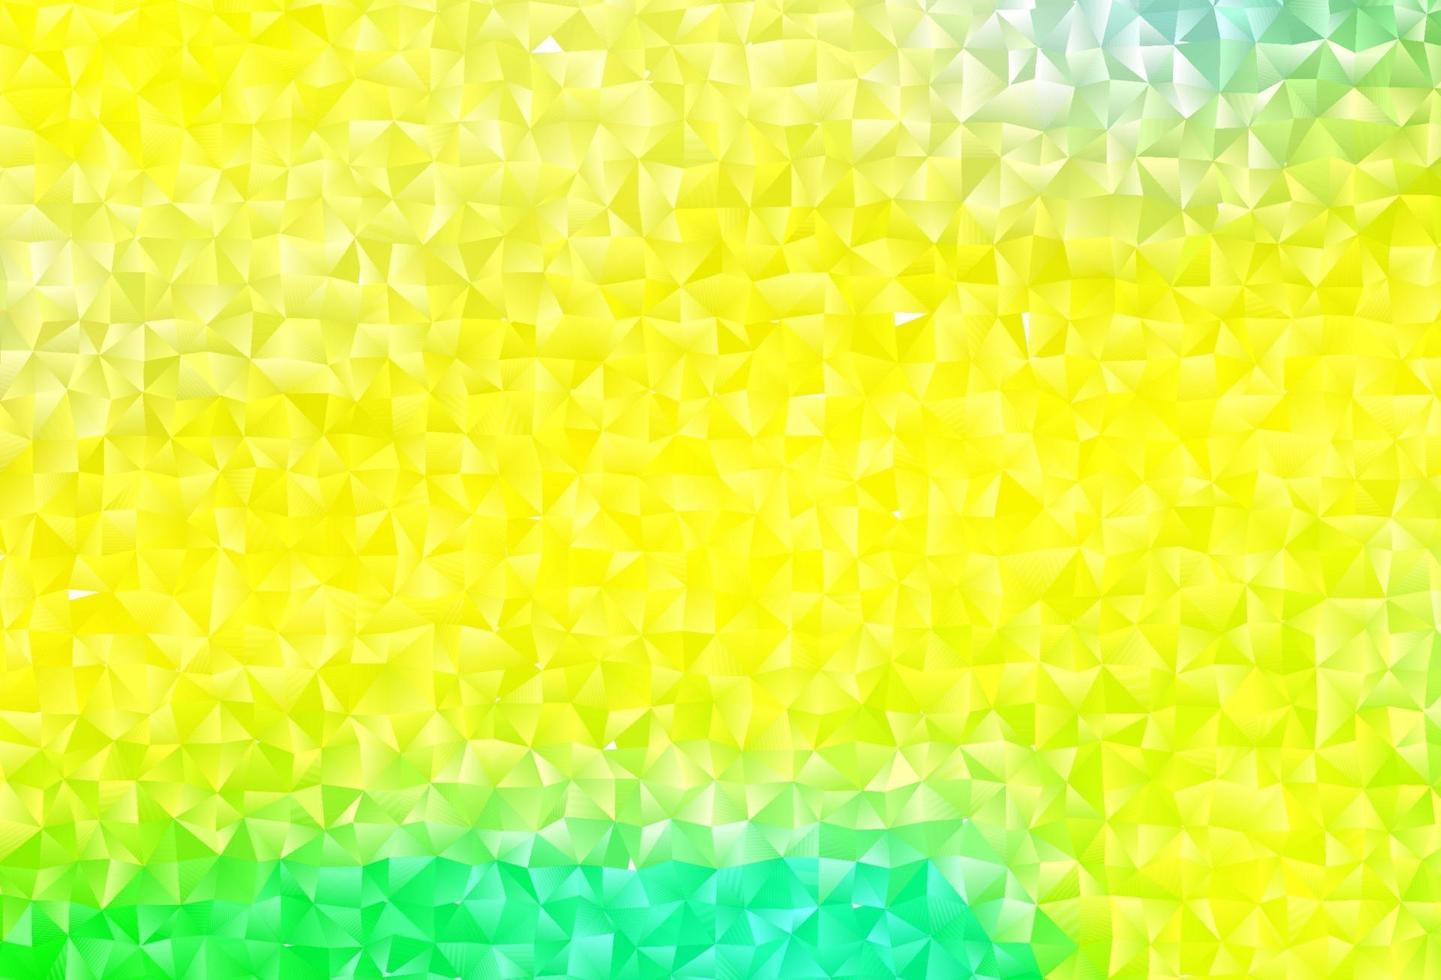 layout poligonal abstrato de vetor verde e amarelo claro.